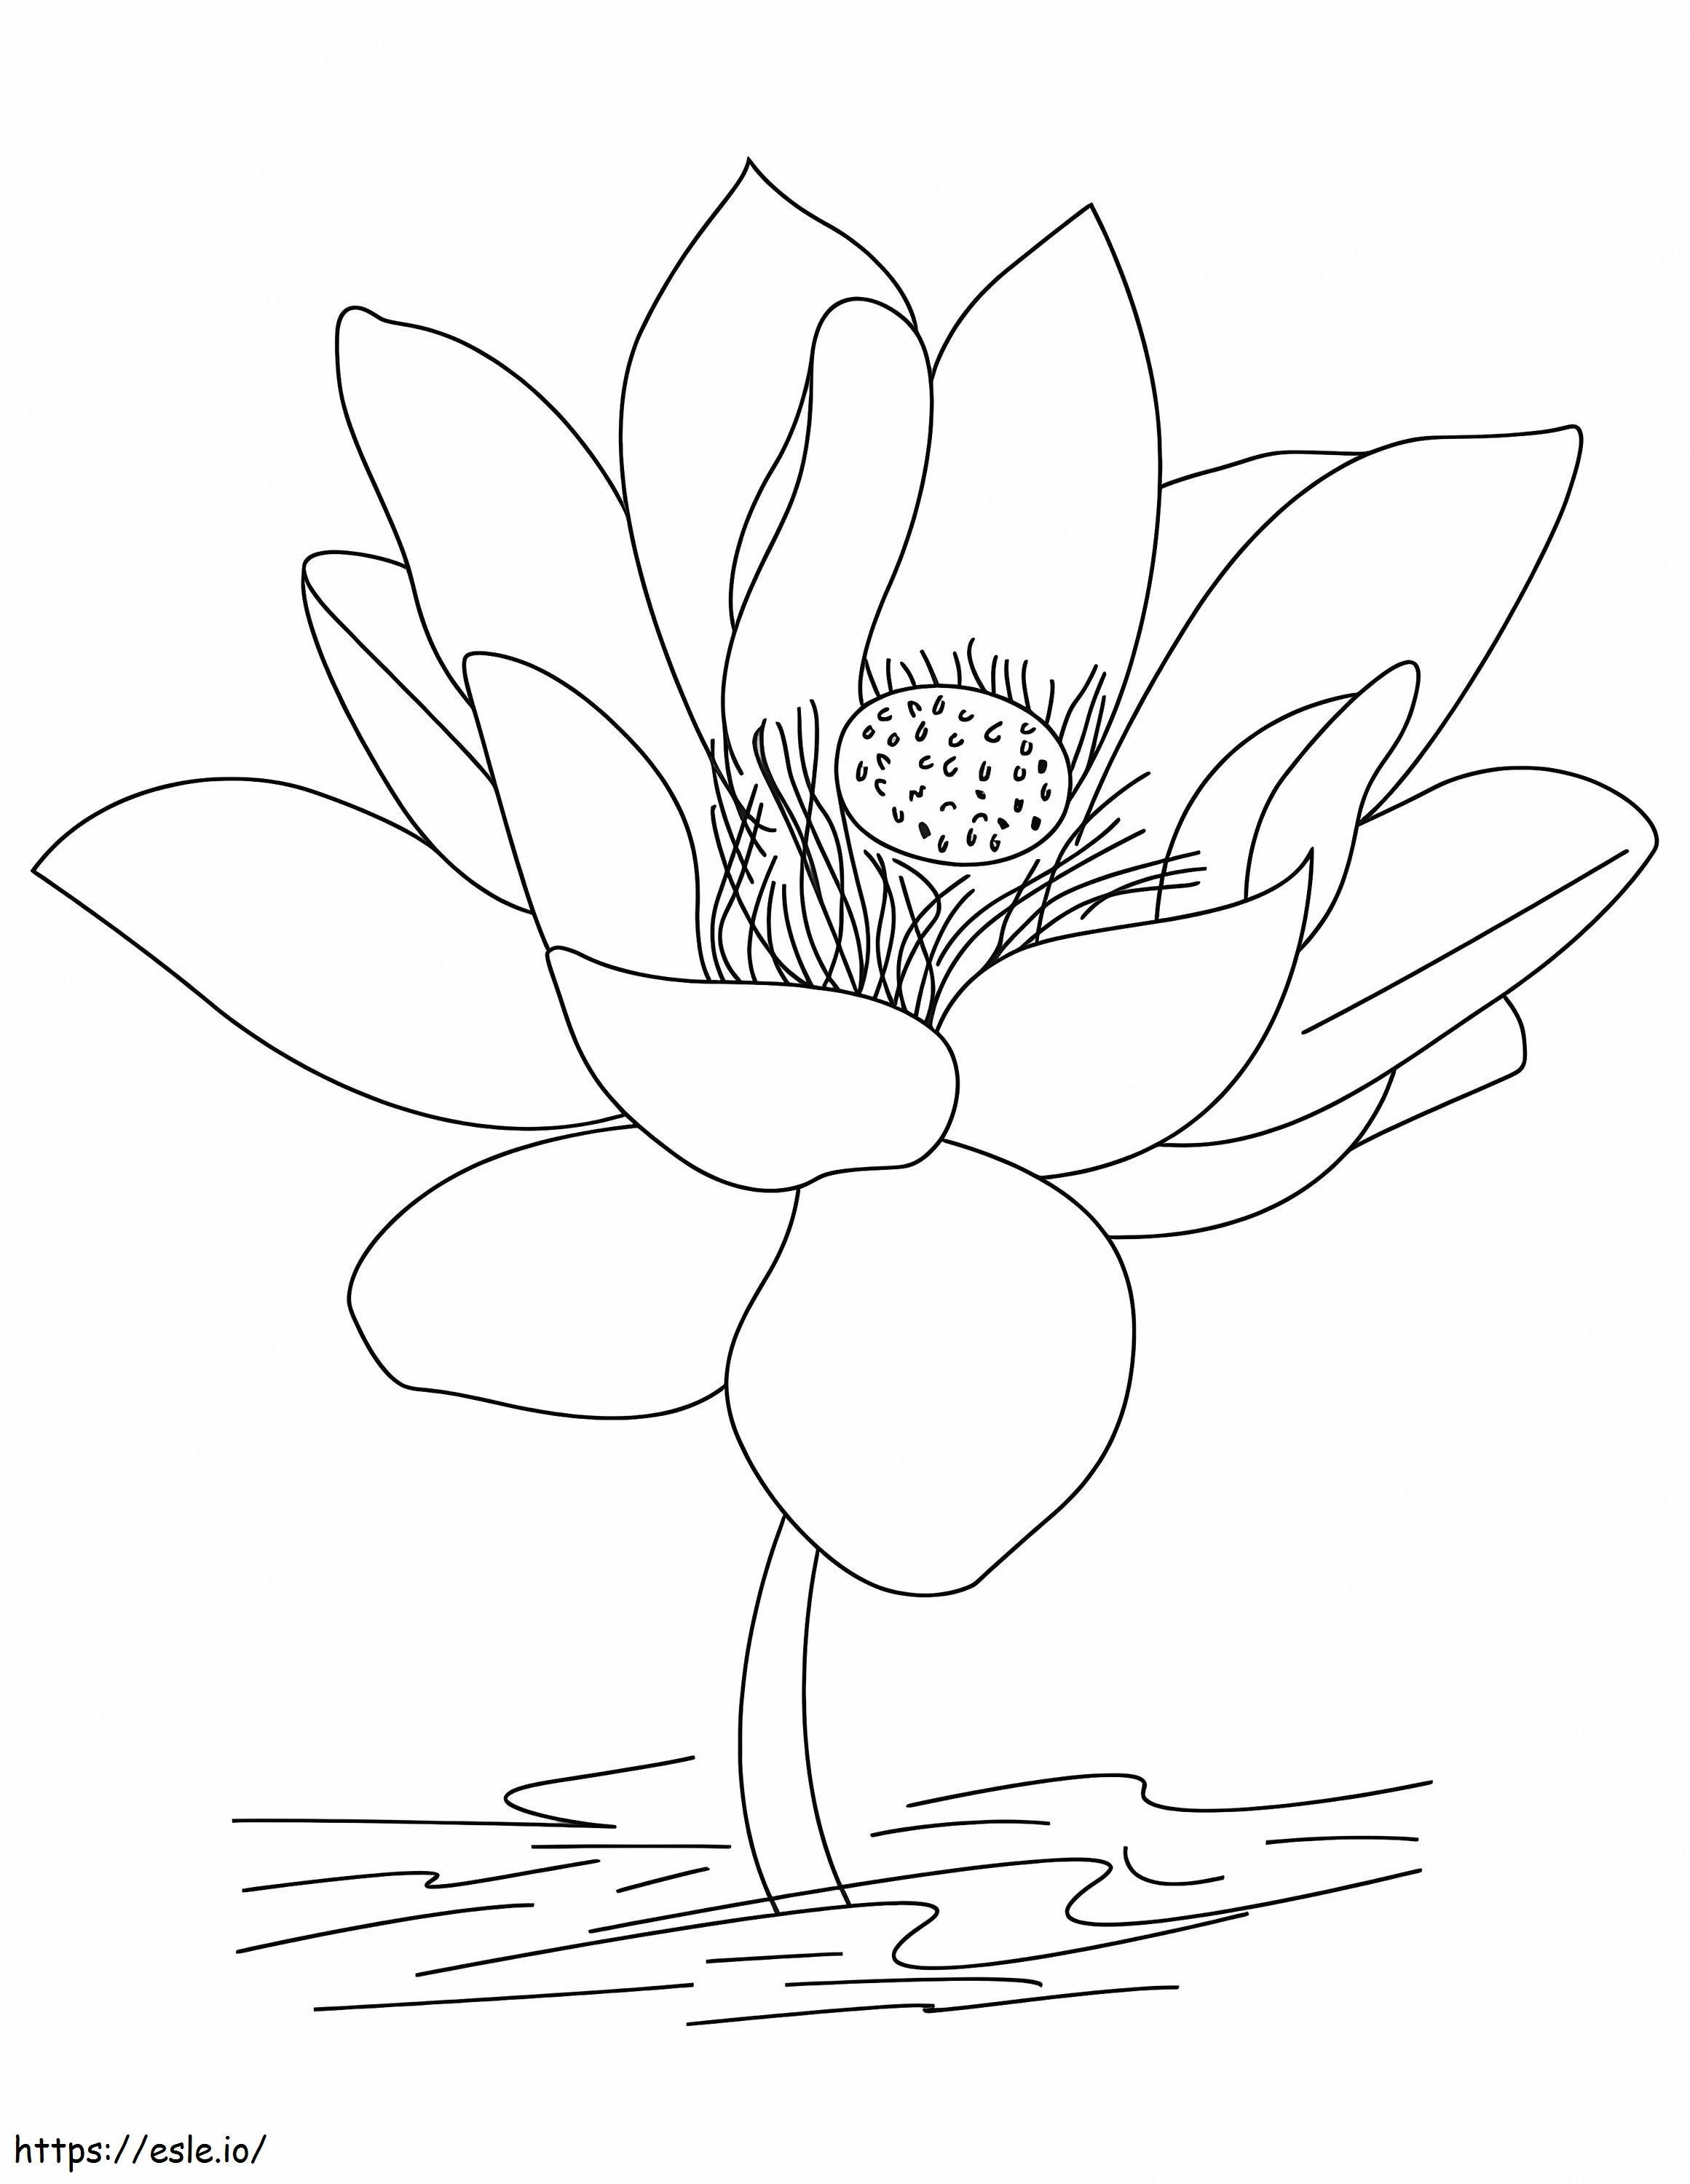 Coloriage Lotus gratuit à imprimer dessin